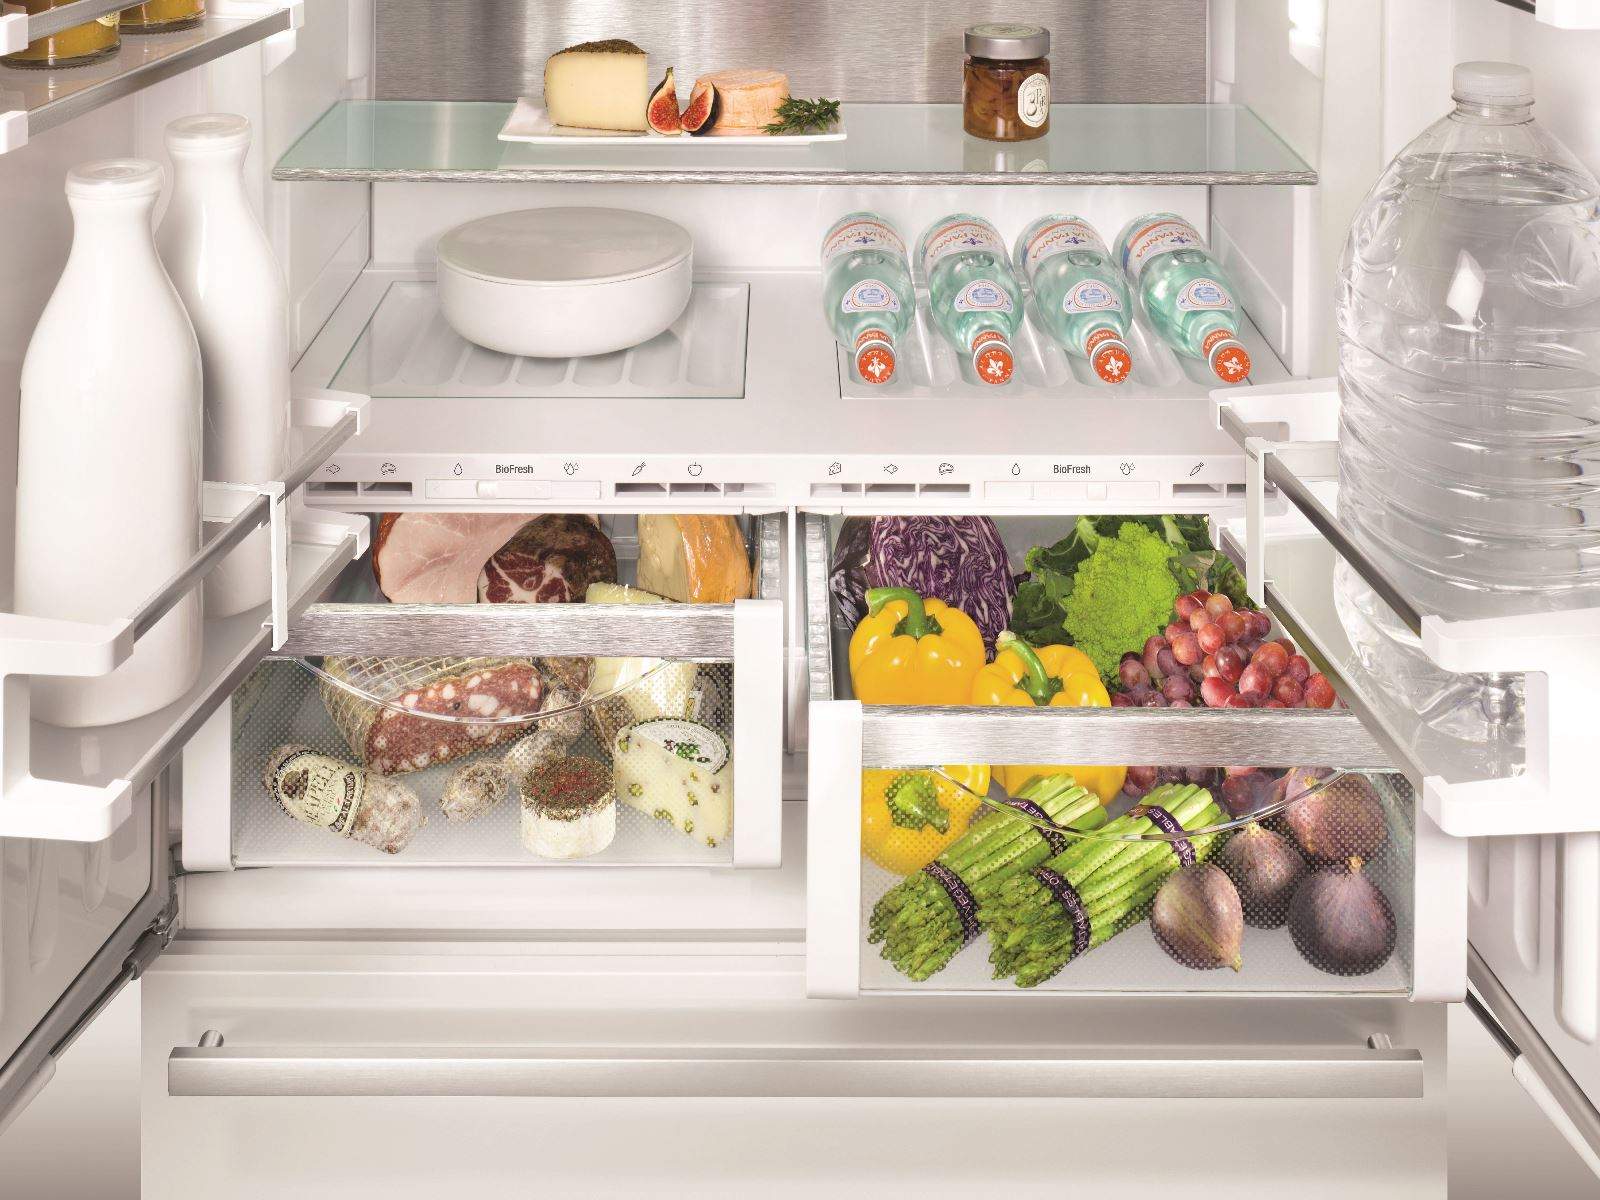 Зона свежести влажная. Холодильник Liebherr CBNES 6256. Либхер холодильник встраиваемый двухкамерный. Liebherr ECBN 6256 встраиваемый. Liebherr 6256 встраиваемый холодильник.